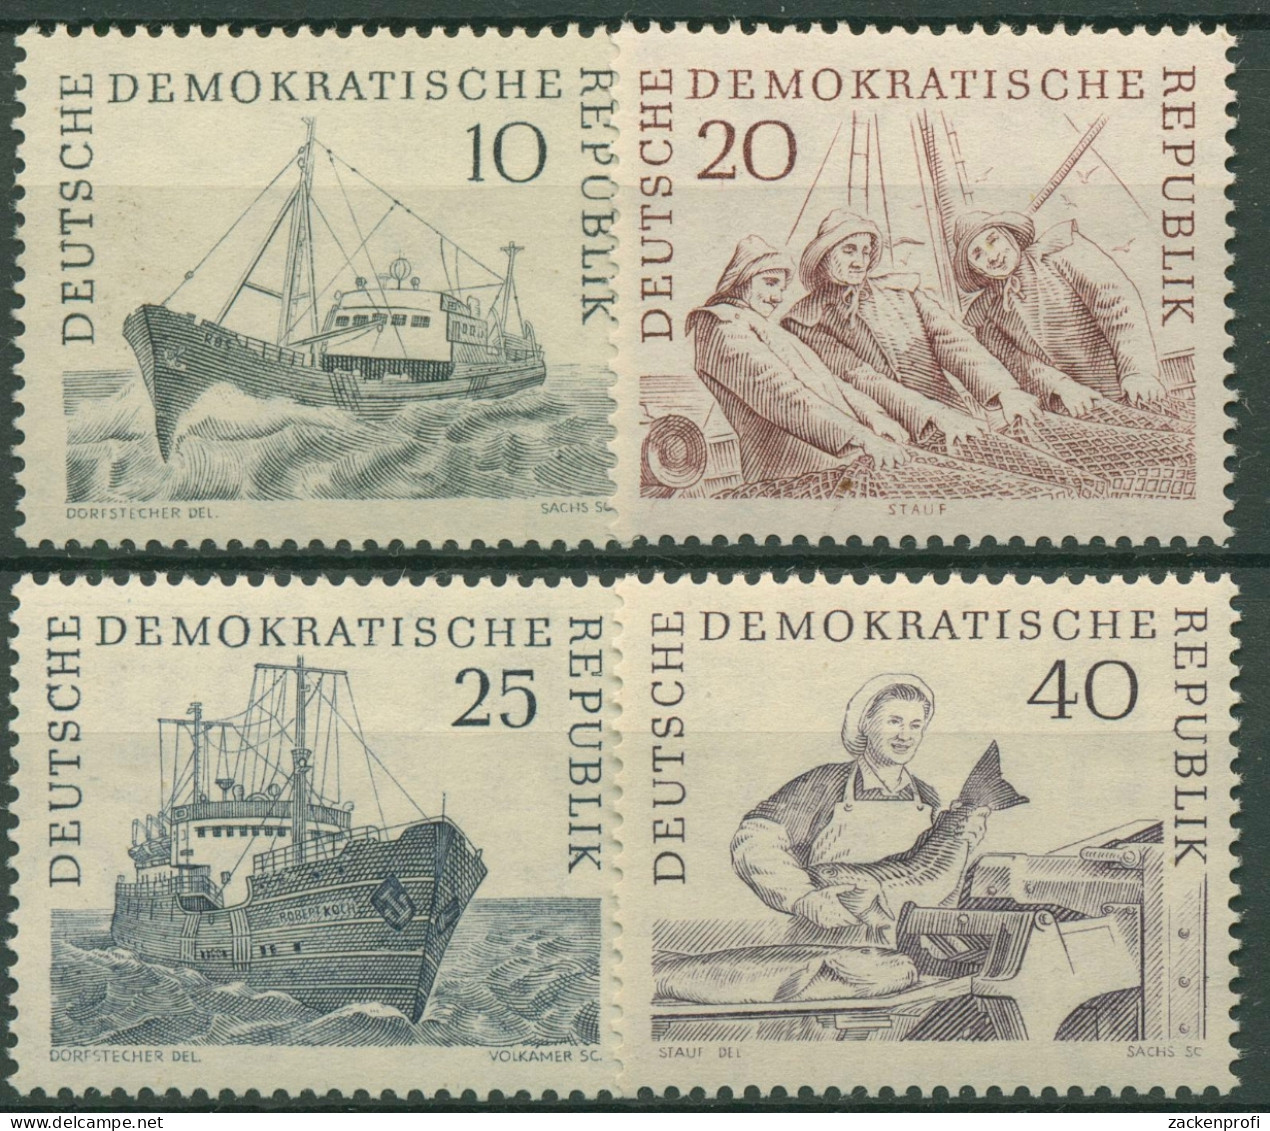 DDR 1961 Hochseefischerei Schiffe 817/20 Postfrisch - Unused Stamps